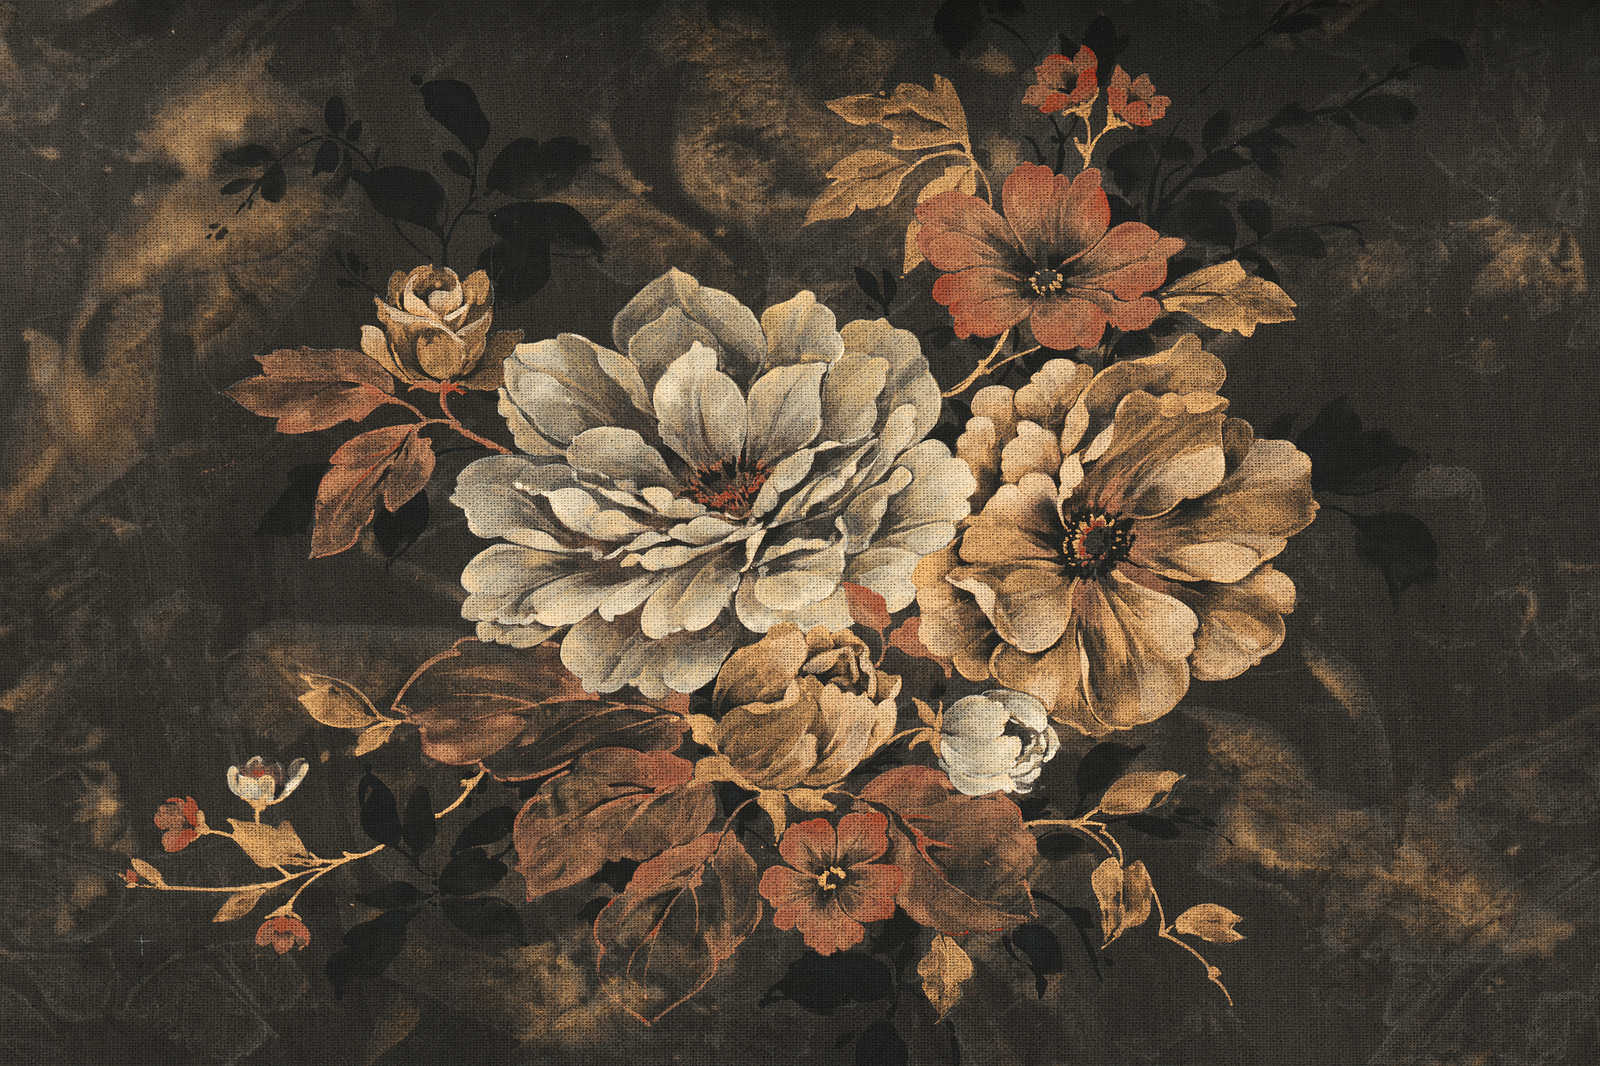             Cuadro lienzo diseño floral, pintura al óleo con aspecto vintage - 1,20 m x 0,80 m
        